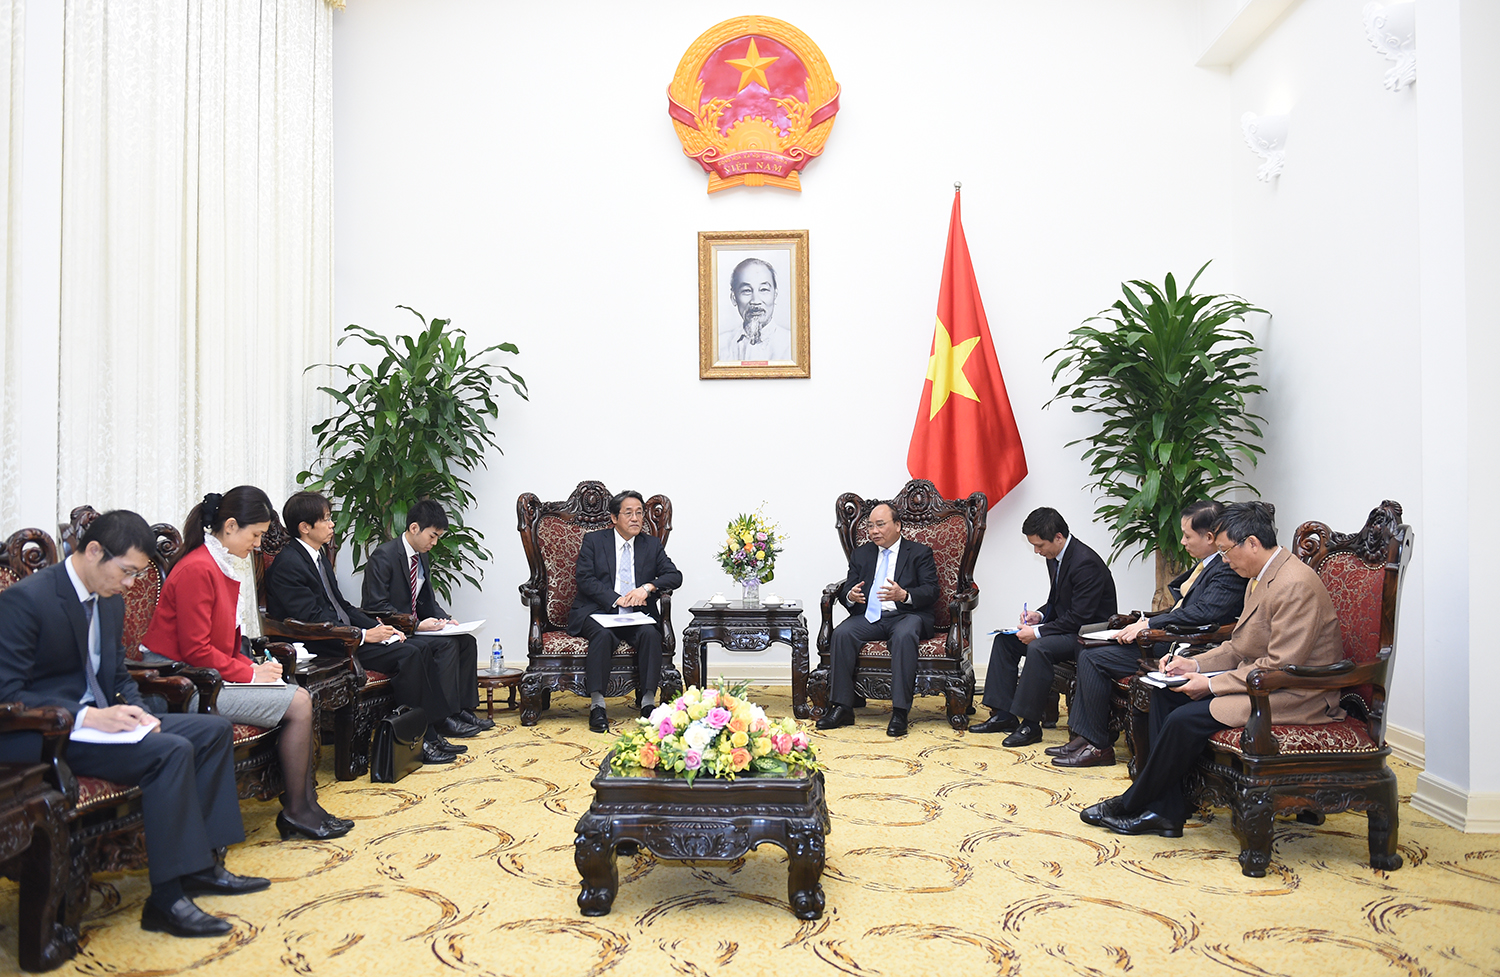  Thủ tướng Nguyễn Xuân Phúc tiếp Đại sứ Đặc mệnh toàn quyền Nhật Bản tại Việt Nam Kunio Umede. Ảnh: VGP